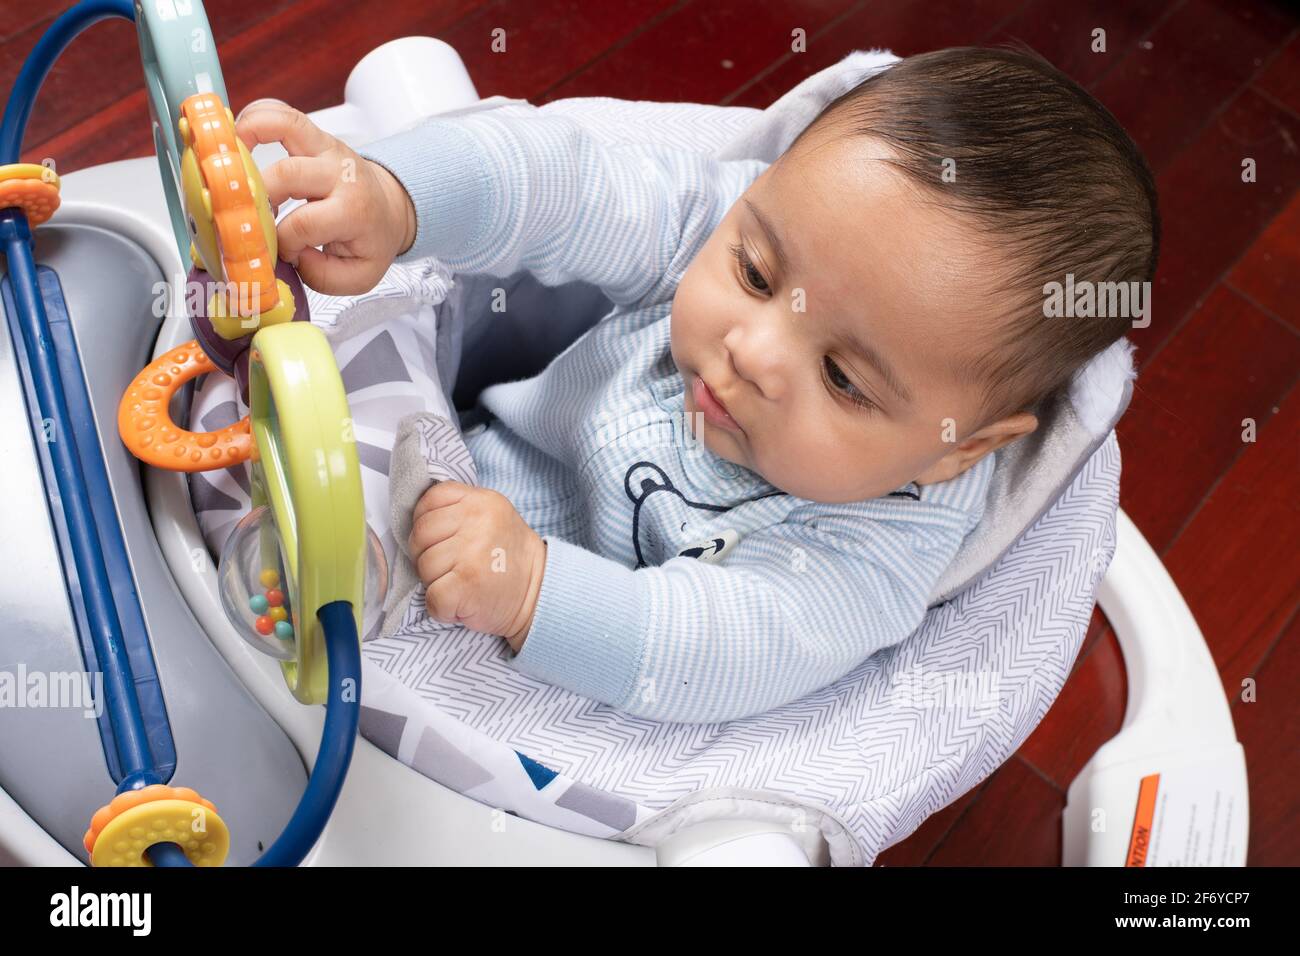 bébé garçon de 4 mois assis dans un siège pour bébé intéressé par le bar à  jouets, atteignant pour toucher le jouet Photo Stock - Alamy